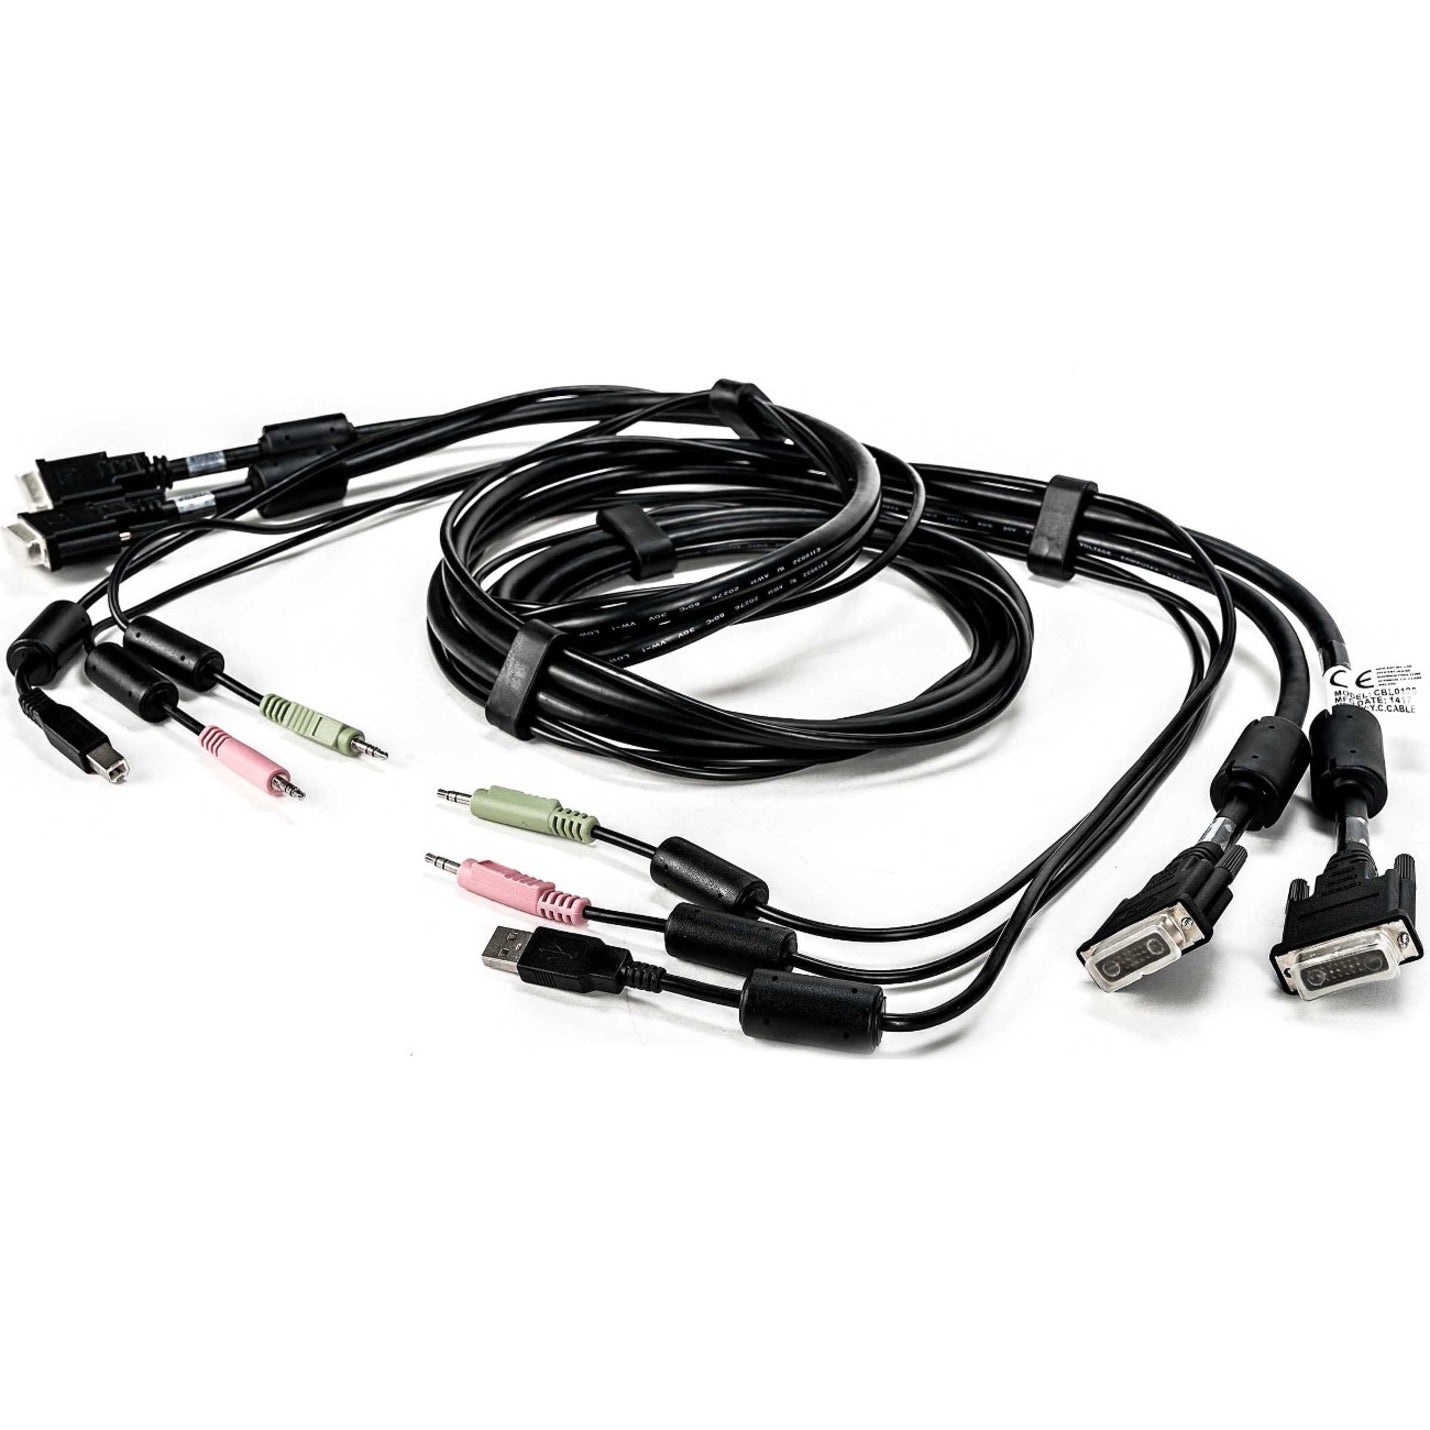 AVOCENT CBL0120 KVM Cable, 6 ft USB Audio DVI-I Digital Video